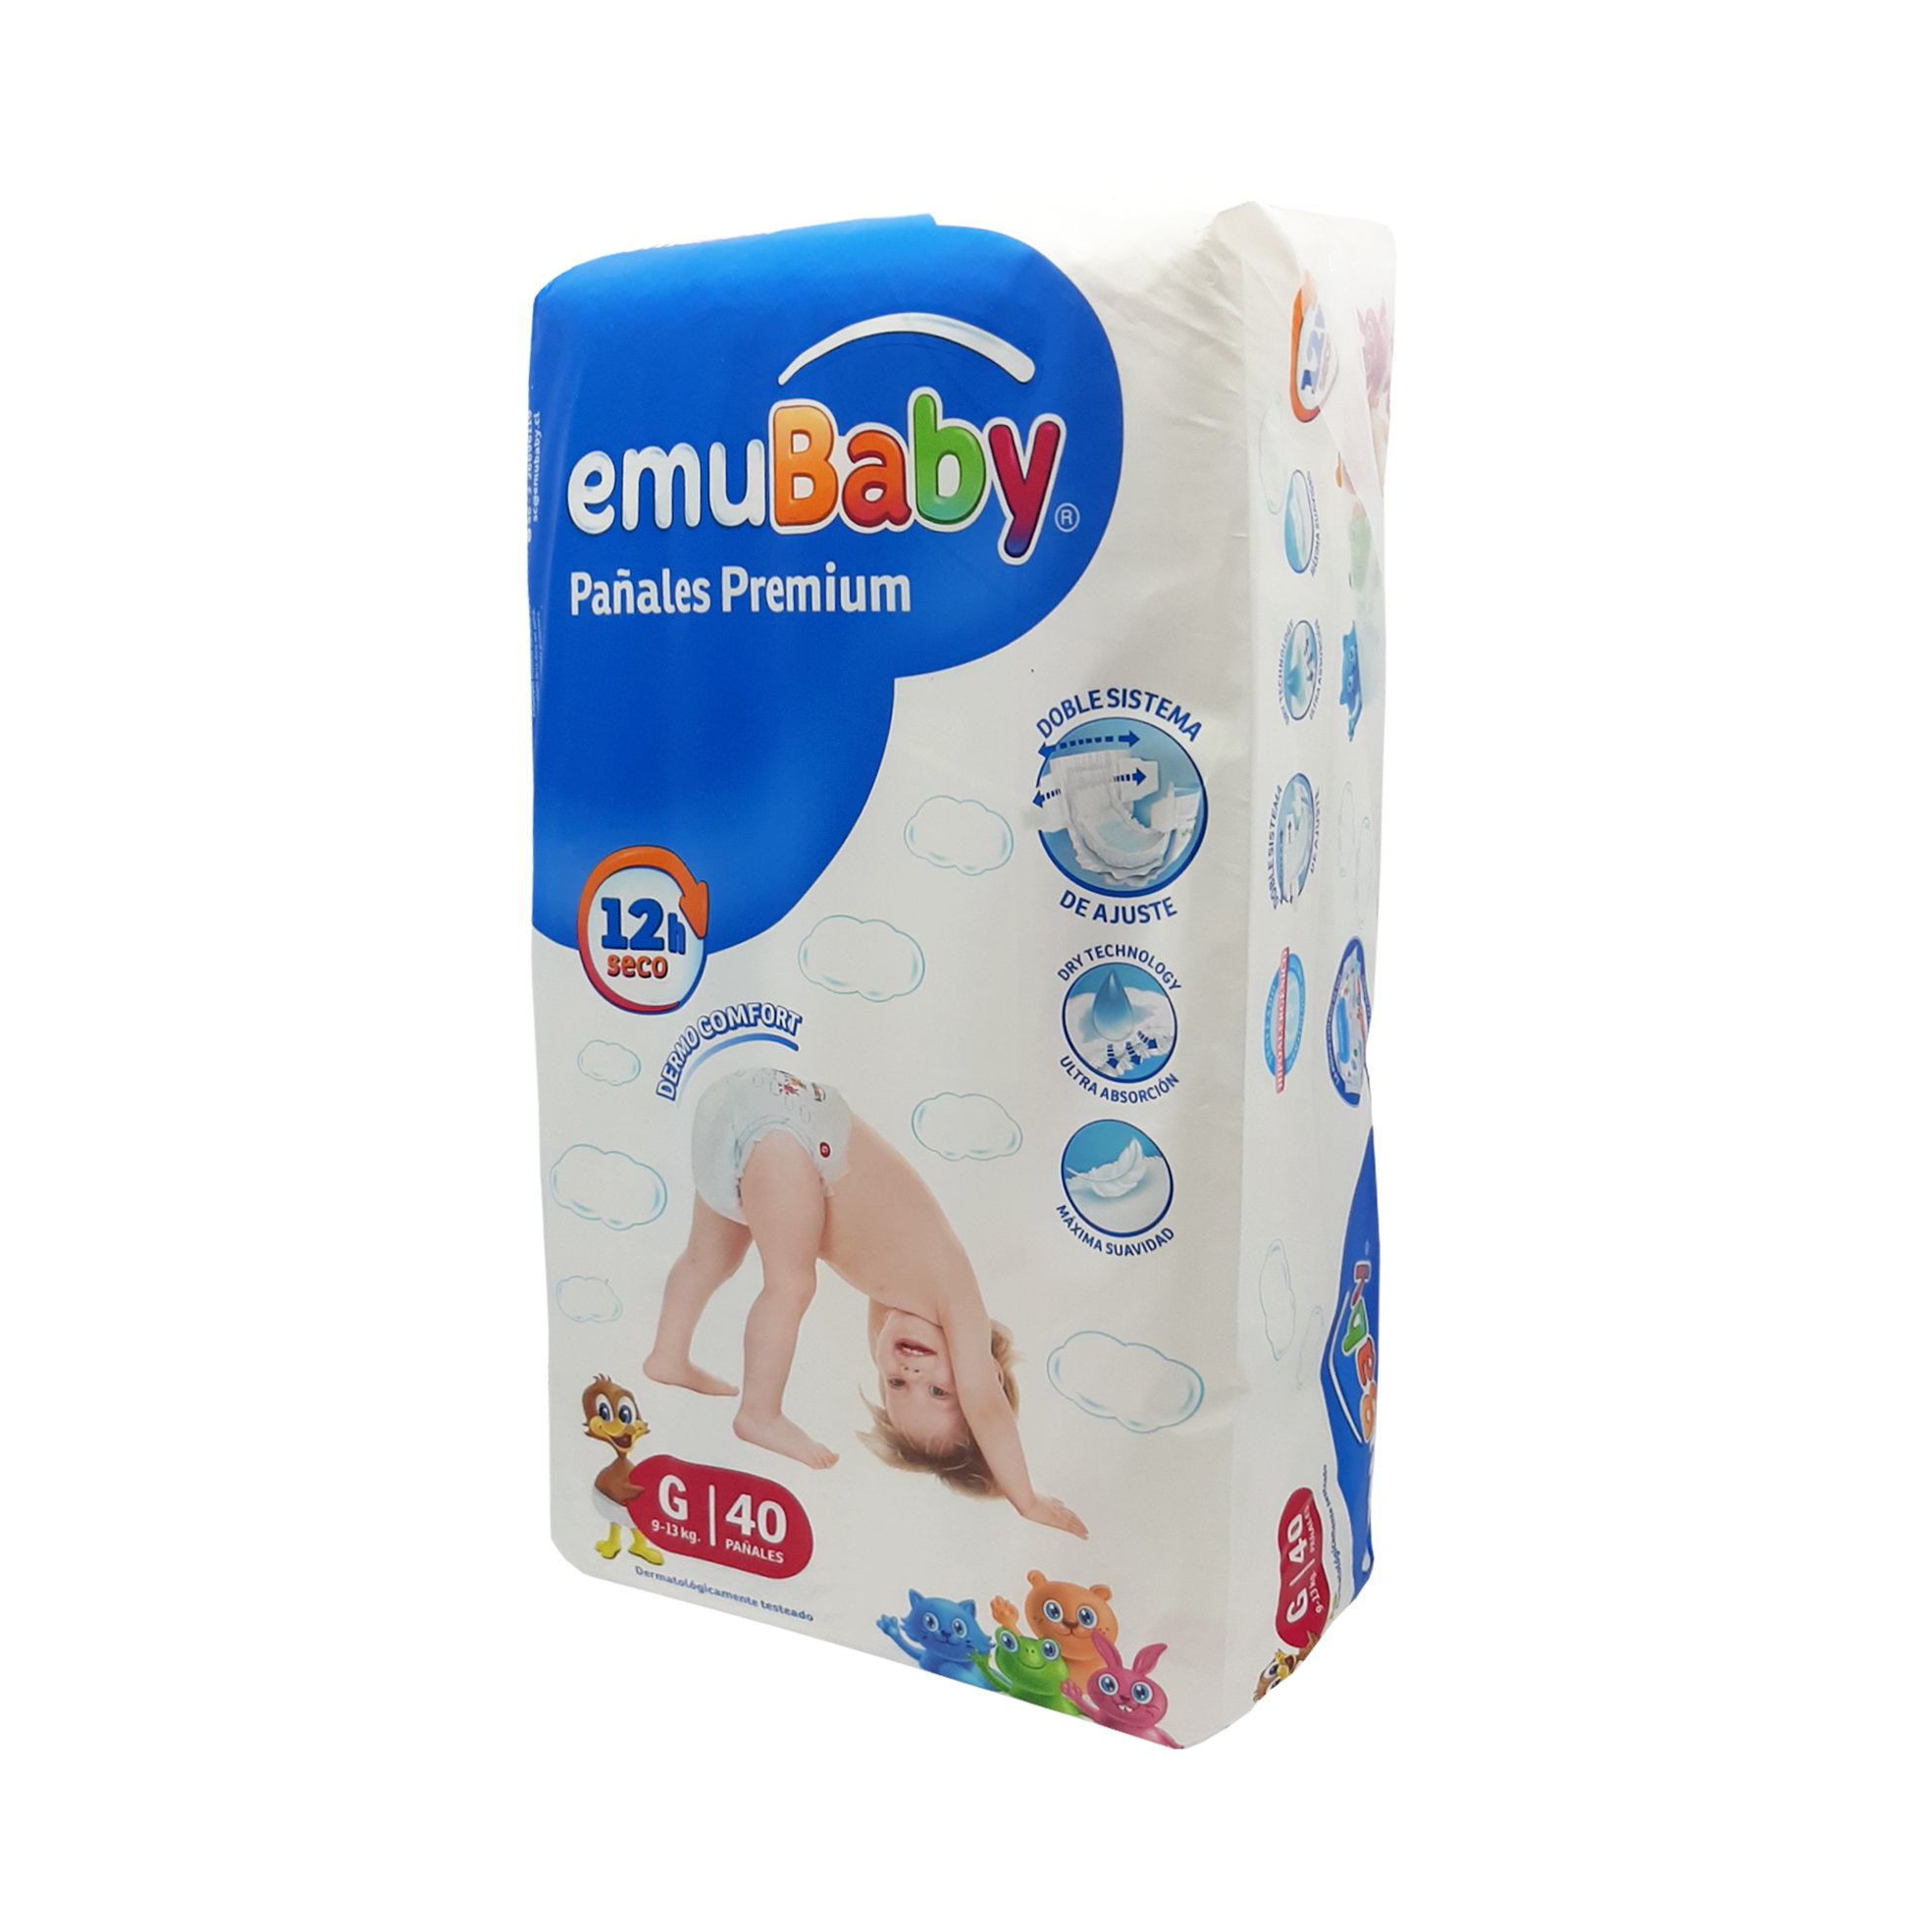 Evolucionar Preparación horno Emubaby - Pañales Premium - G 9 - 13 kg 40 pañales - Importadora R&R